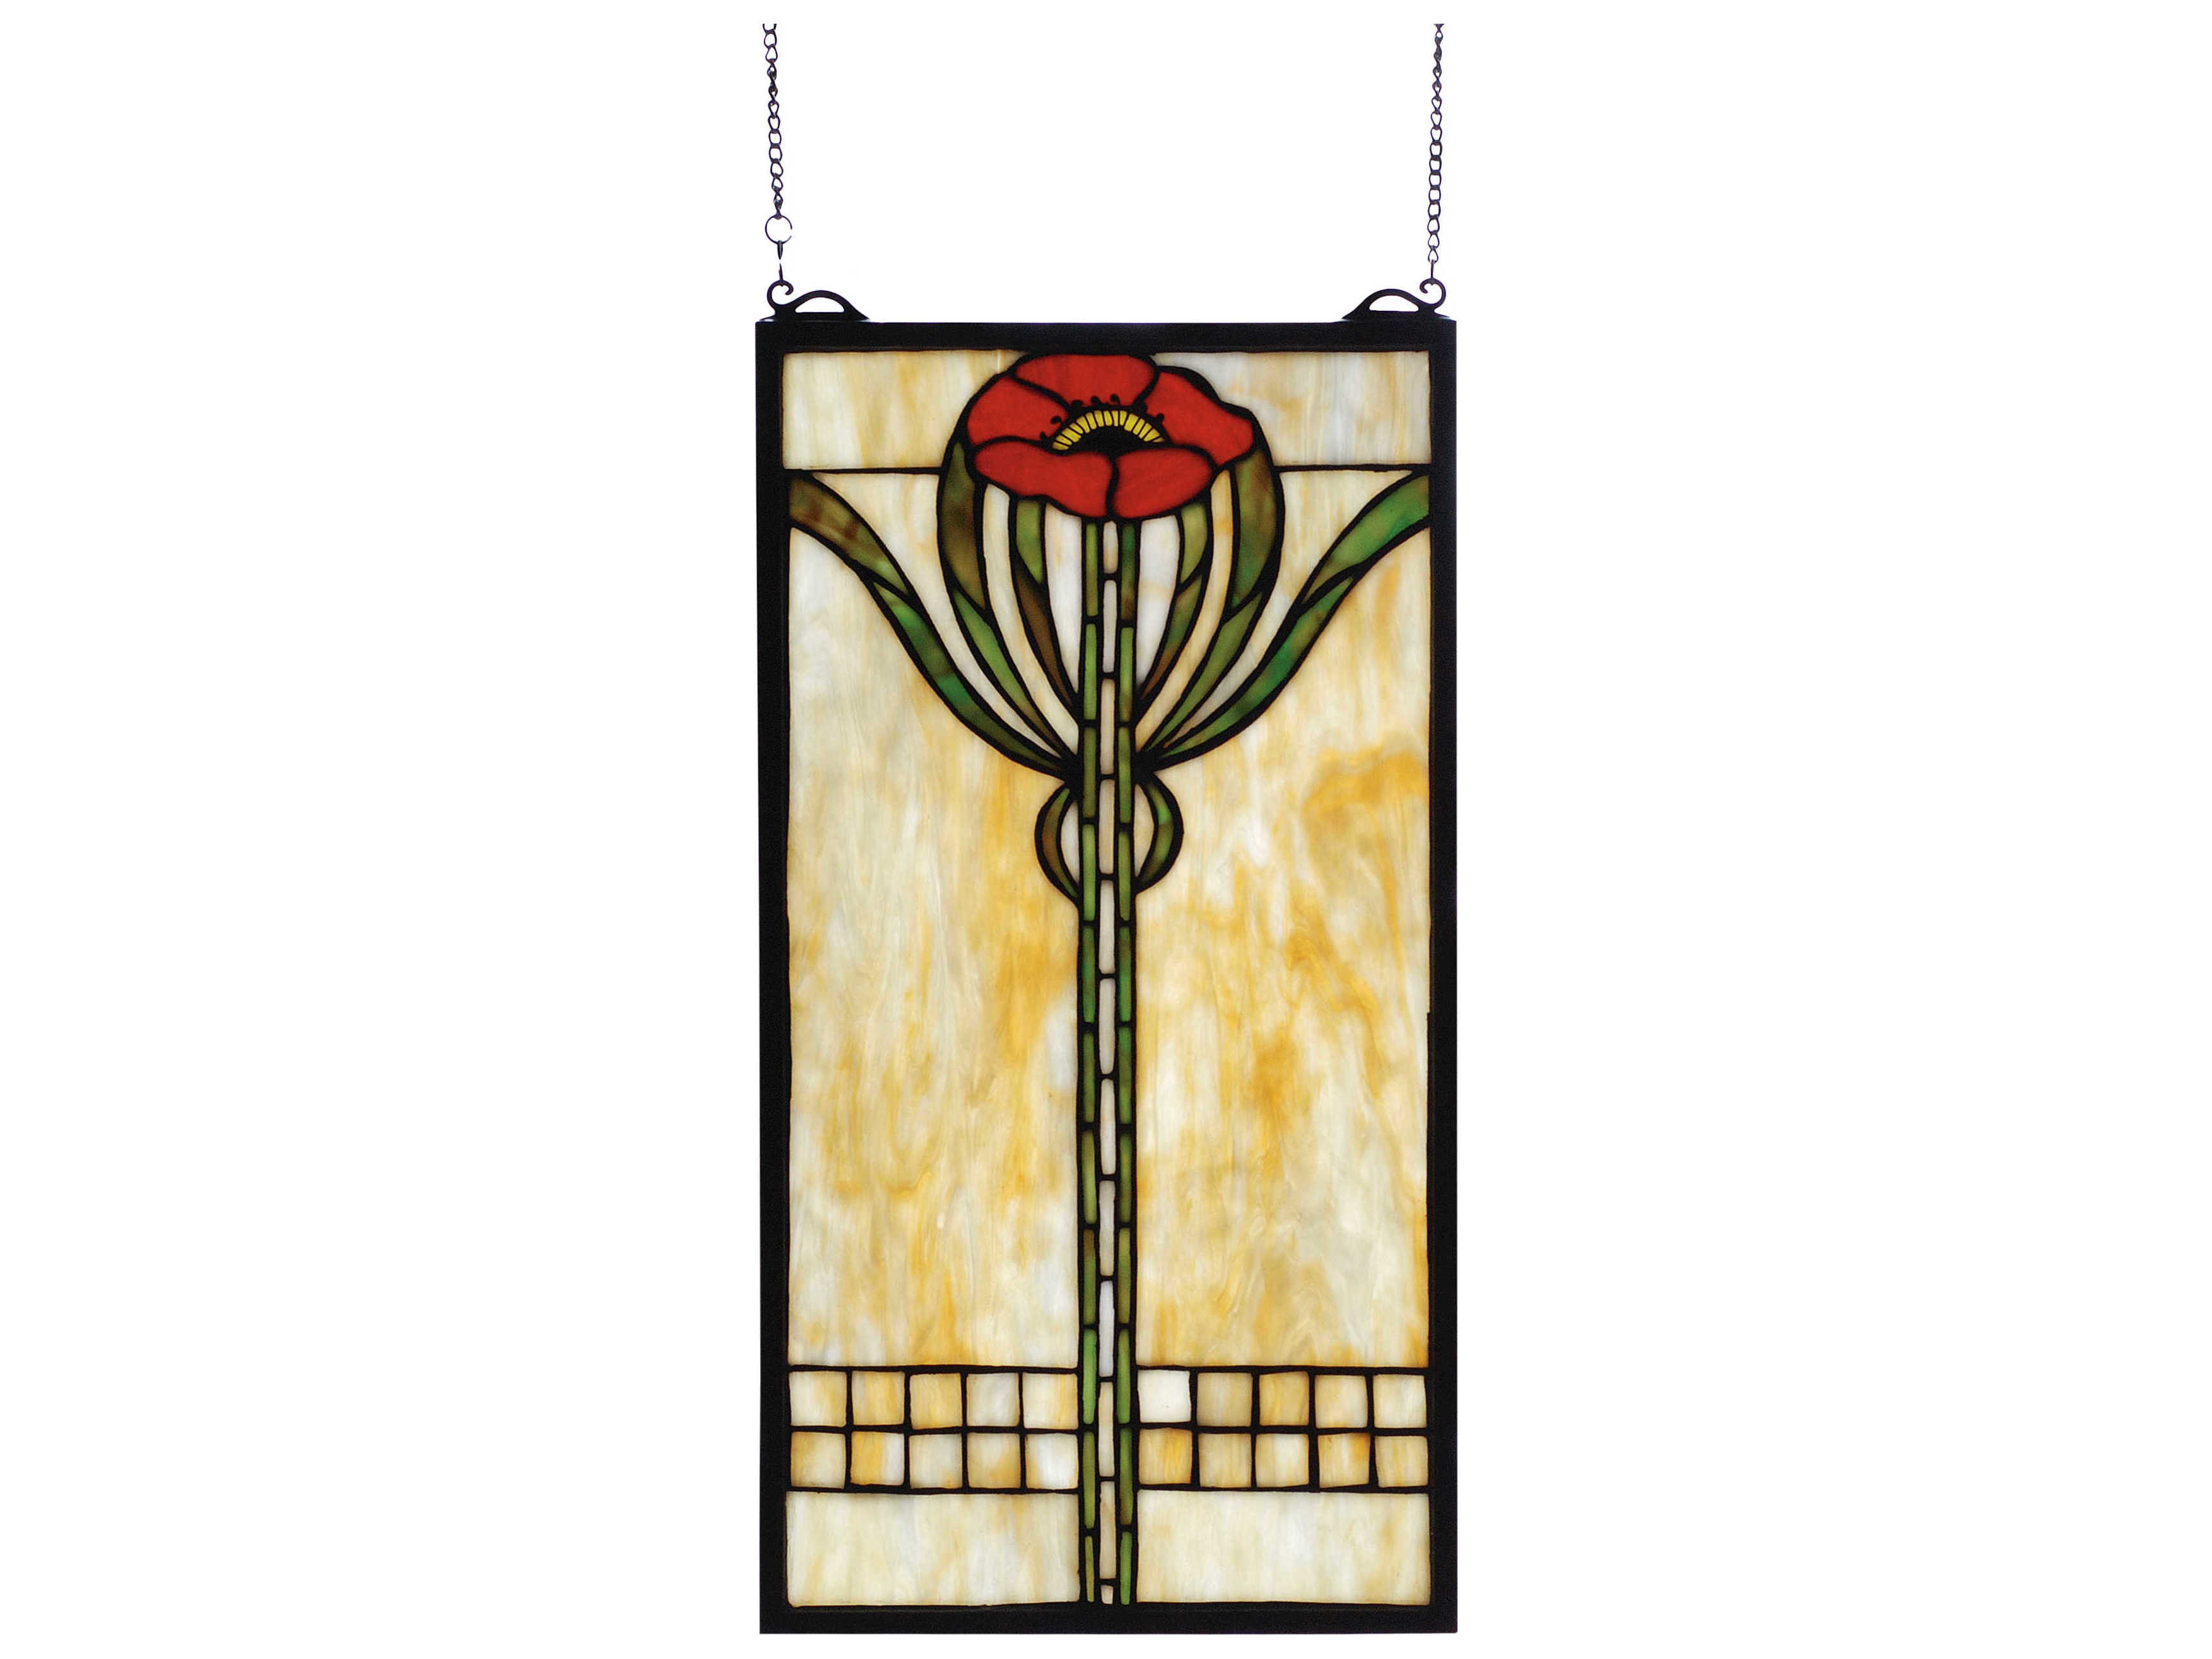 Meyda Arts Crafts Parker Poppy Stained Glass Window My677